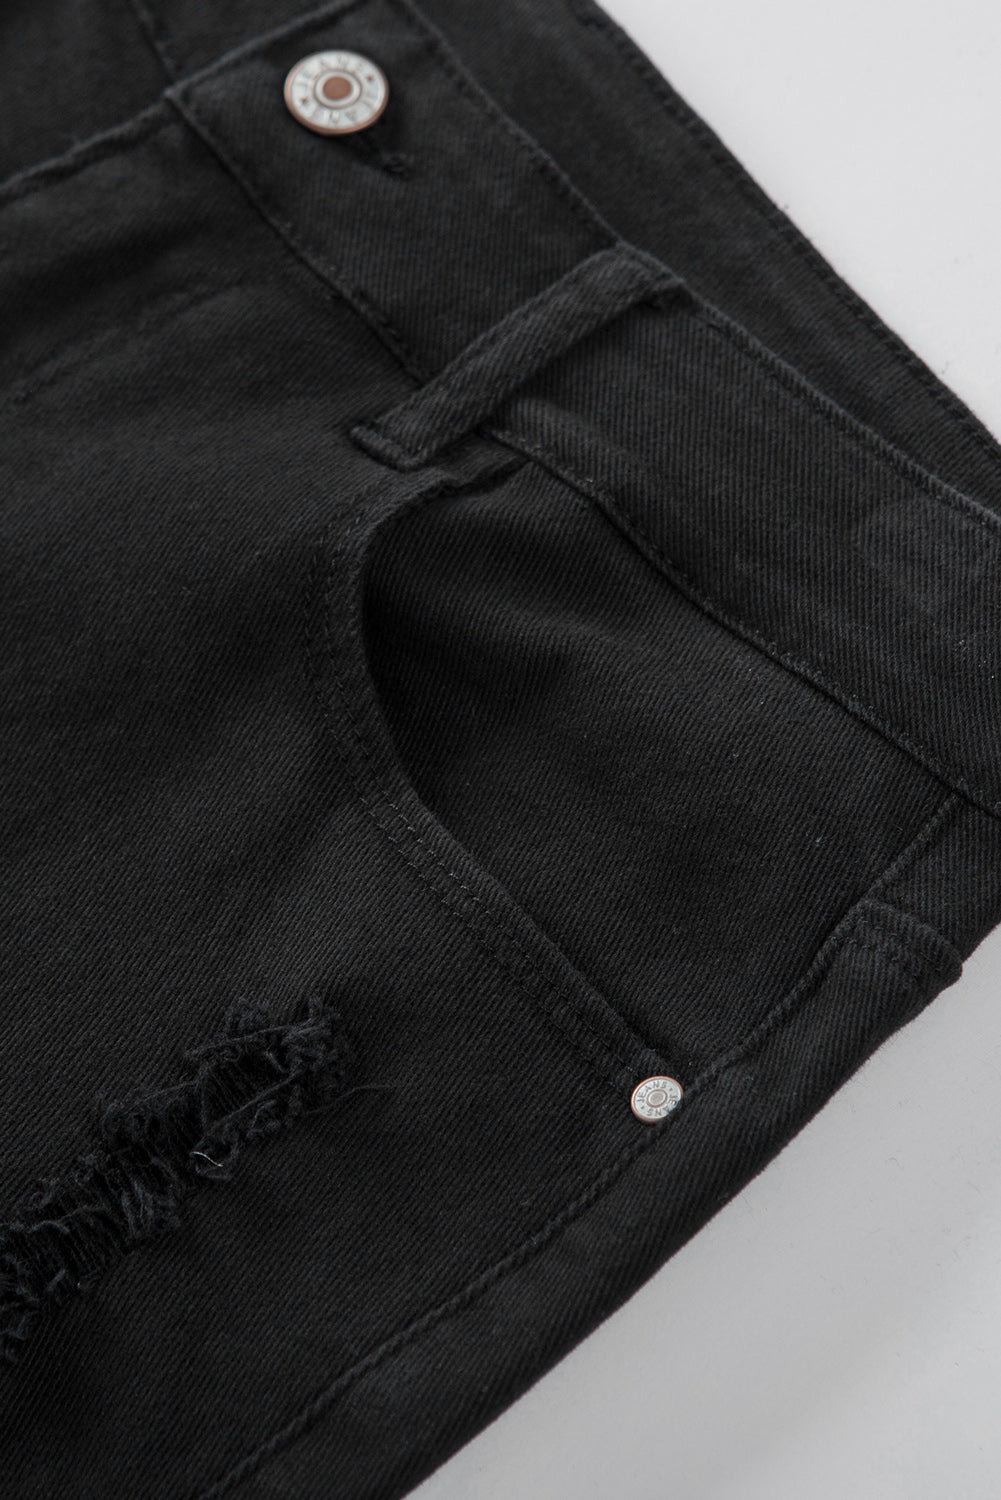 Črne, enobarvne kratke hlače iz jeansa v stiski